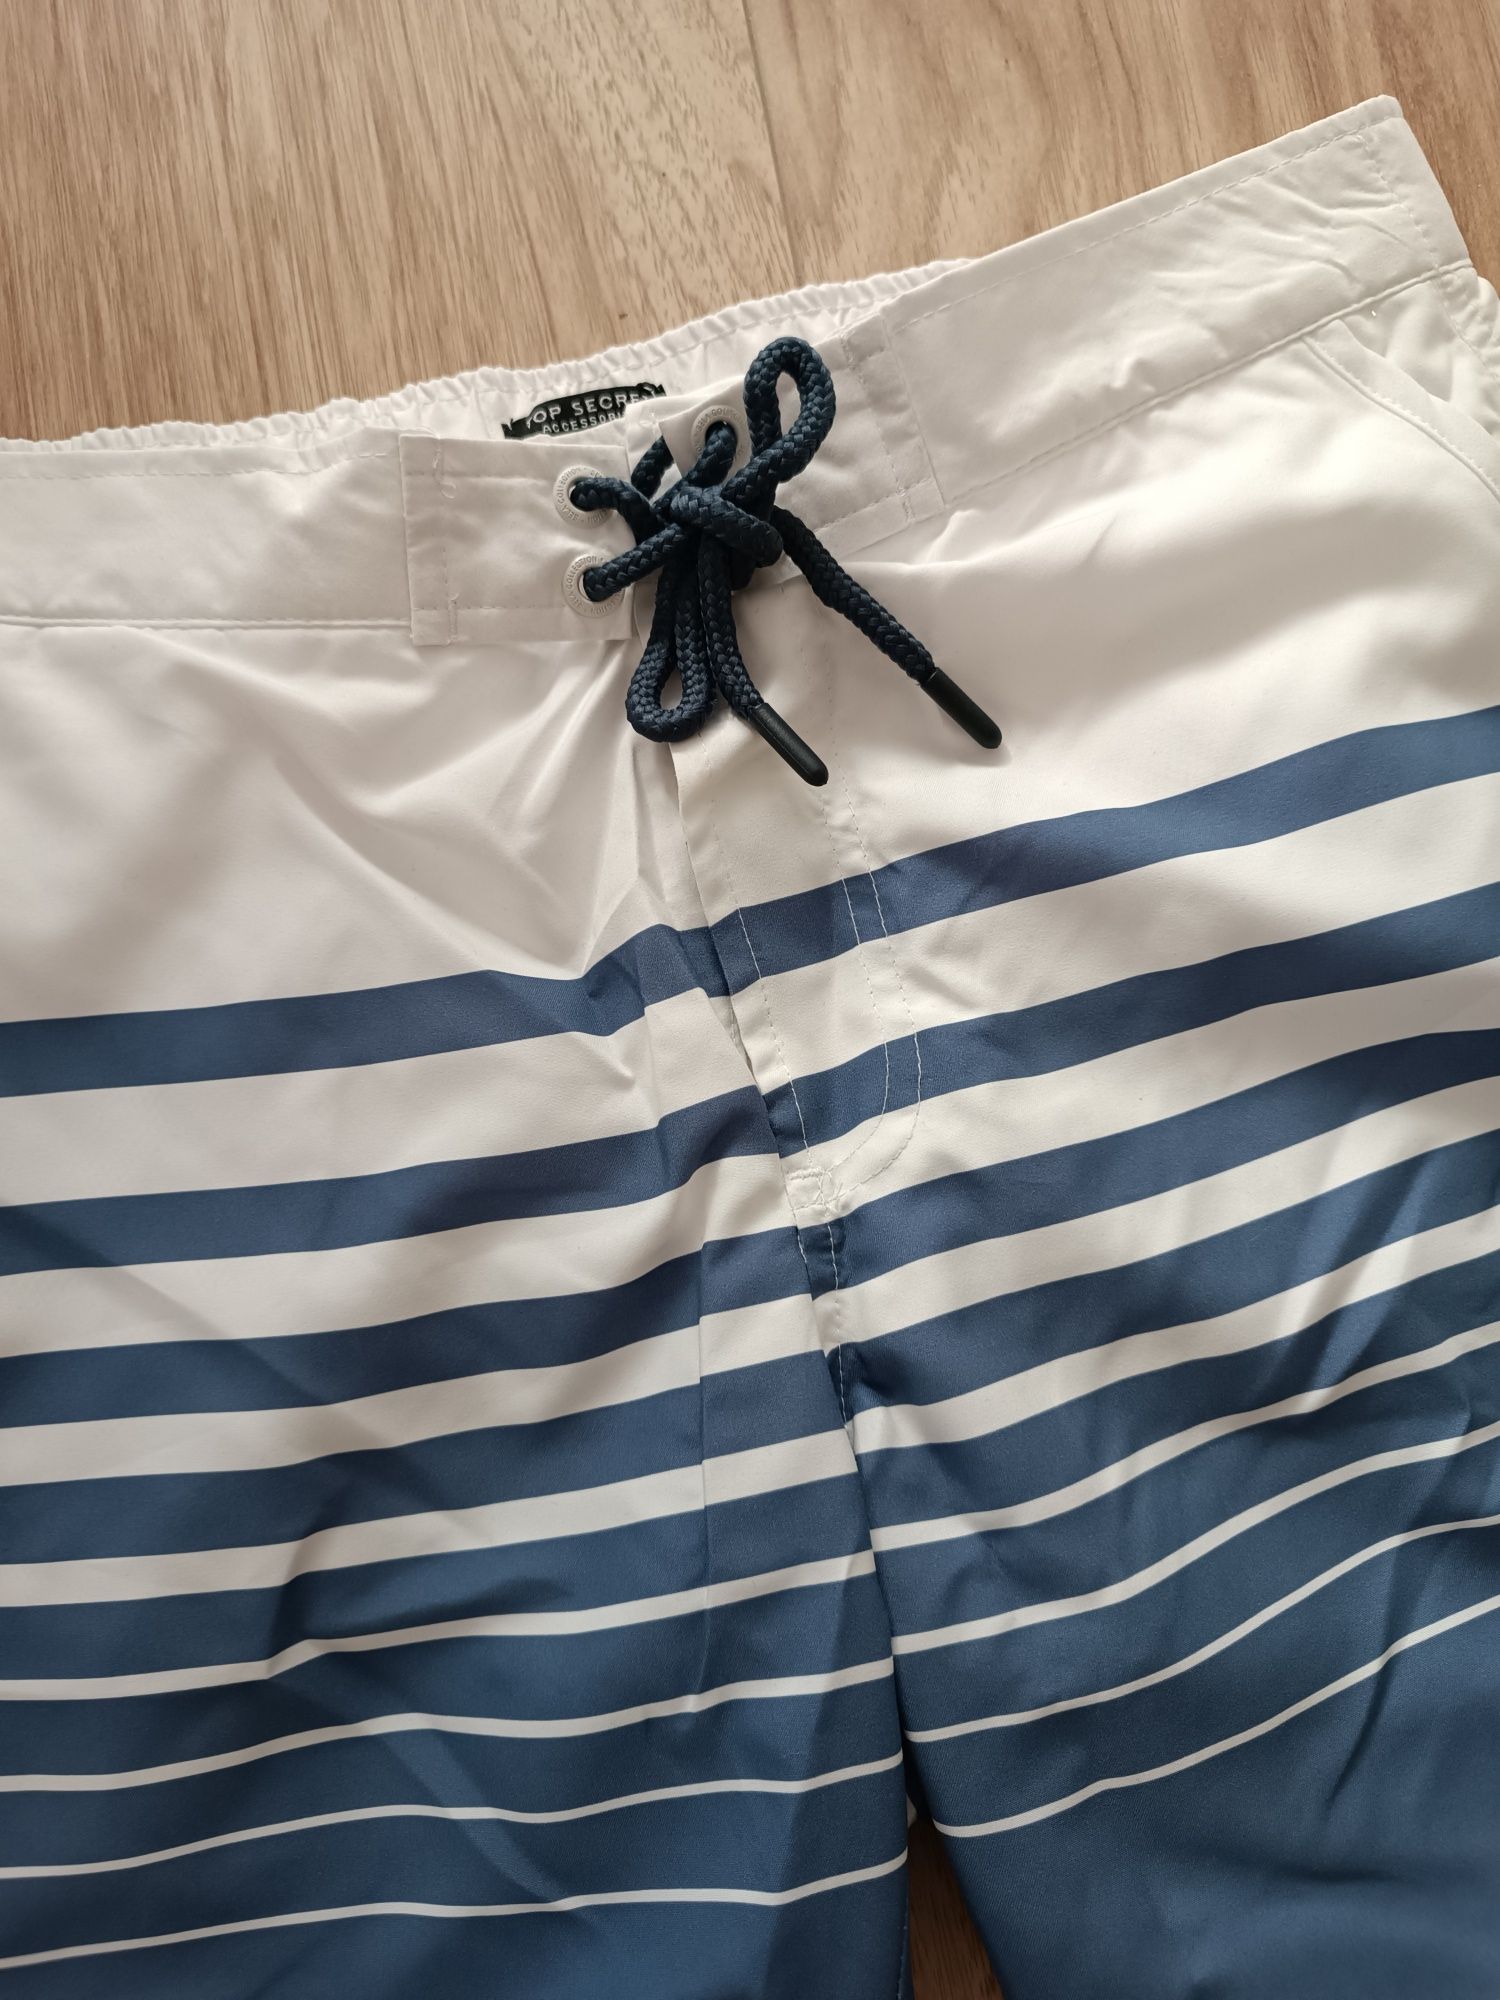 Białe męskie szorty kąpielowe spodenki w niebieskie paski XS